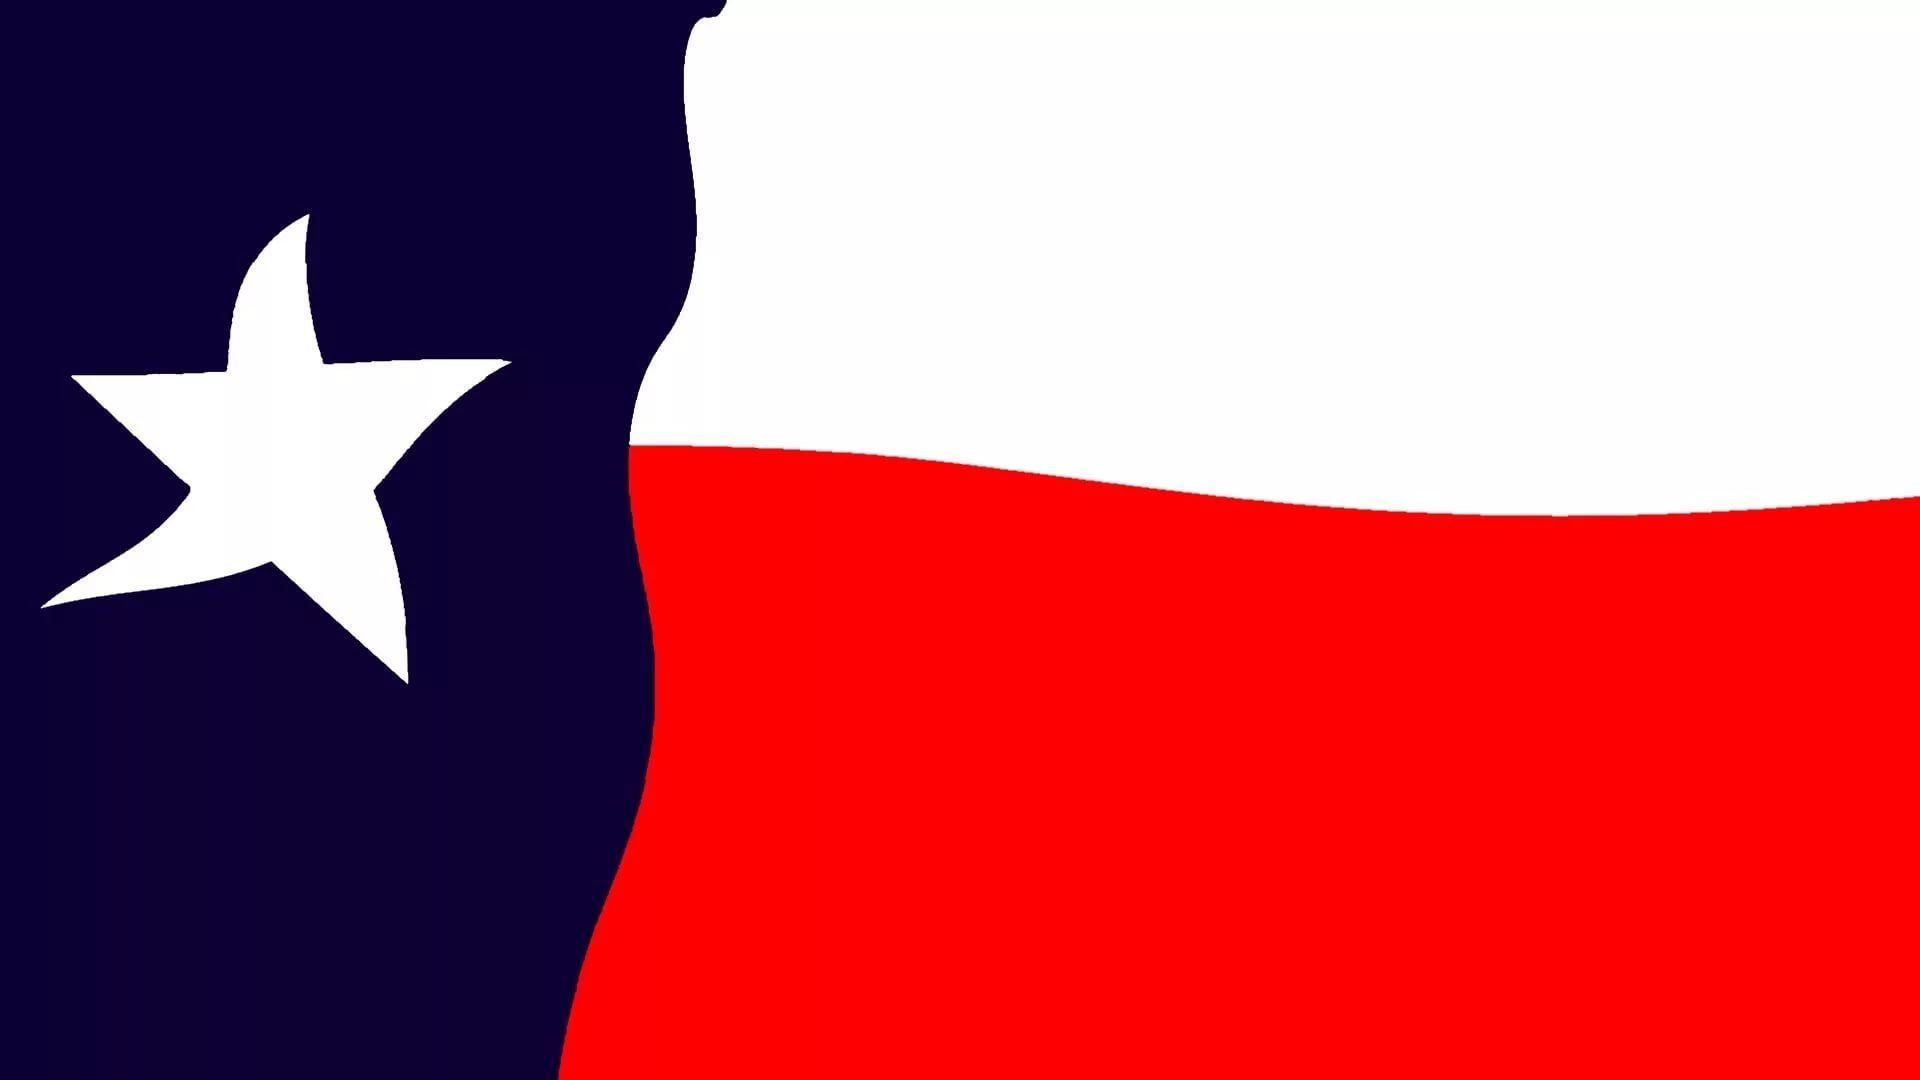 Texas Flag Download Wallpaper - Texas Flag 1920 X 1080 - HD Wallpaper 